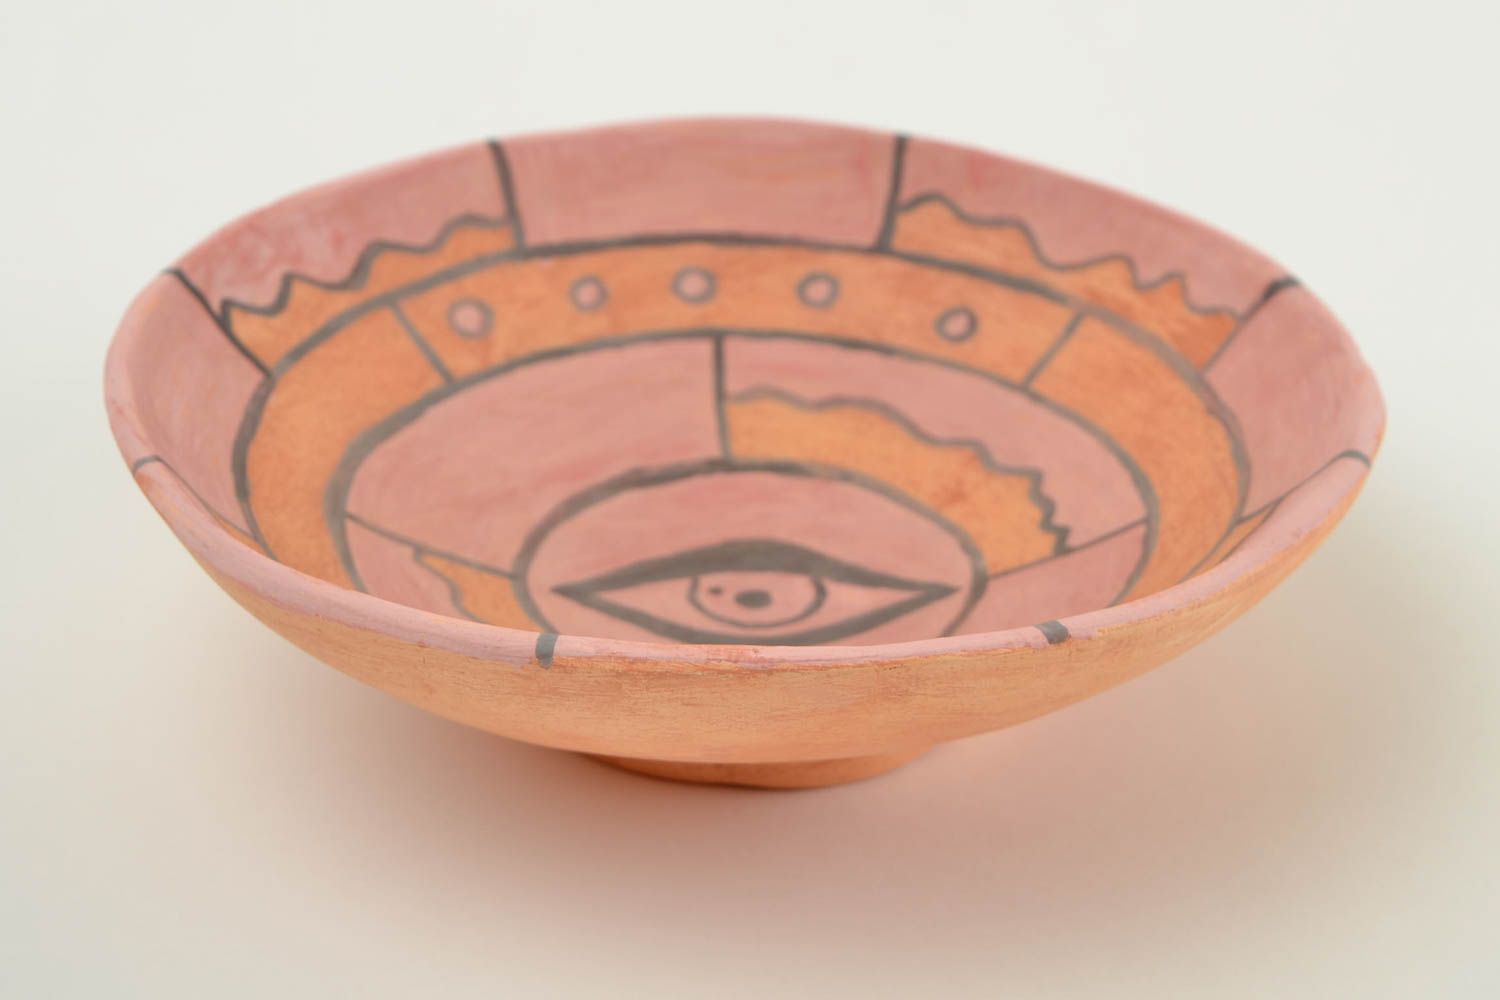 Handmade bemalter Teller Geschirr aus Keramik mit Auge Abbildung sicher foto 4